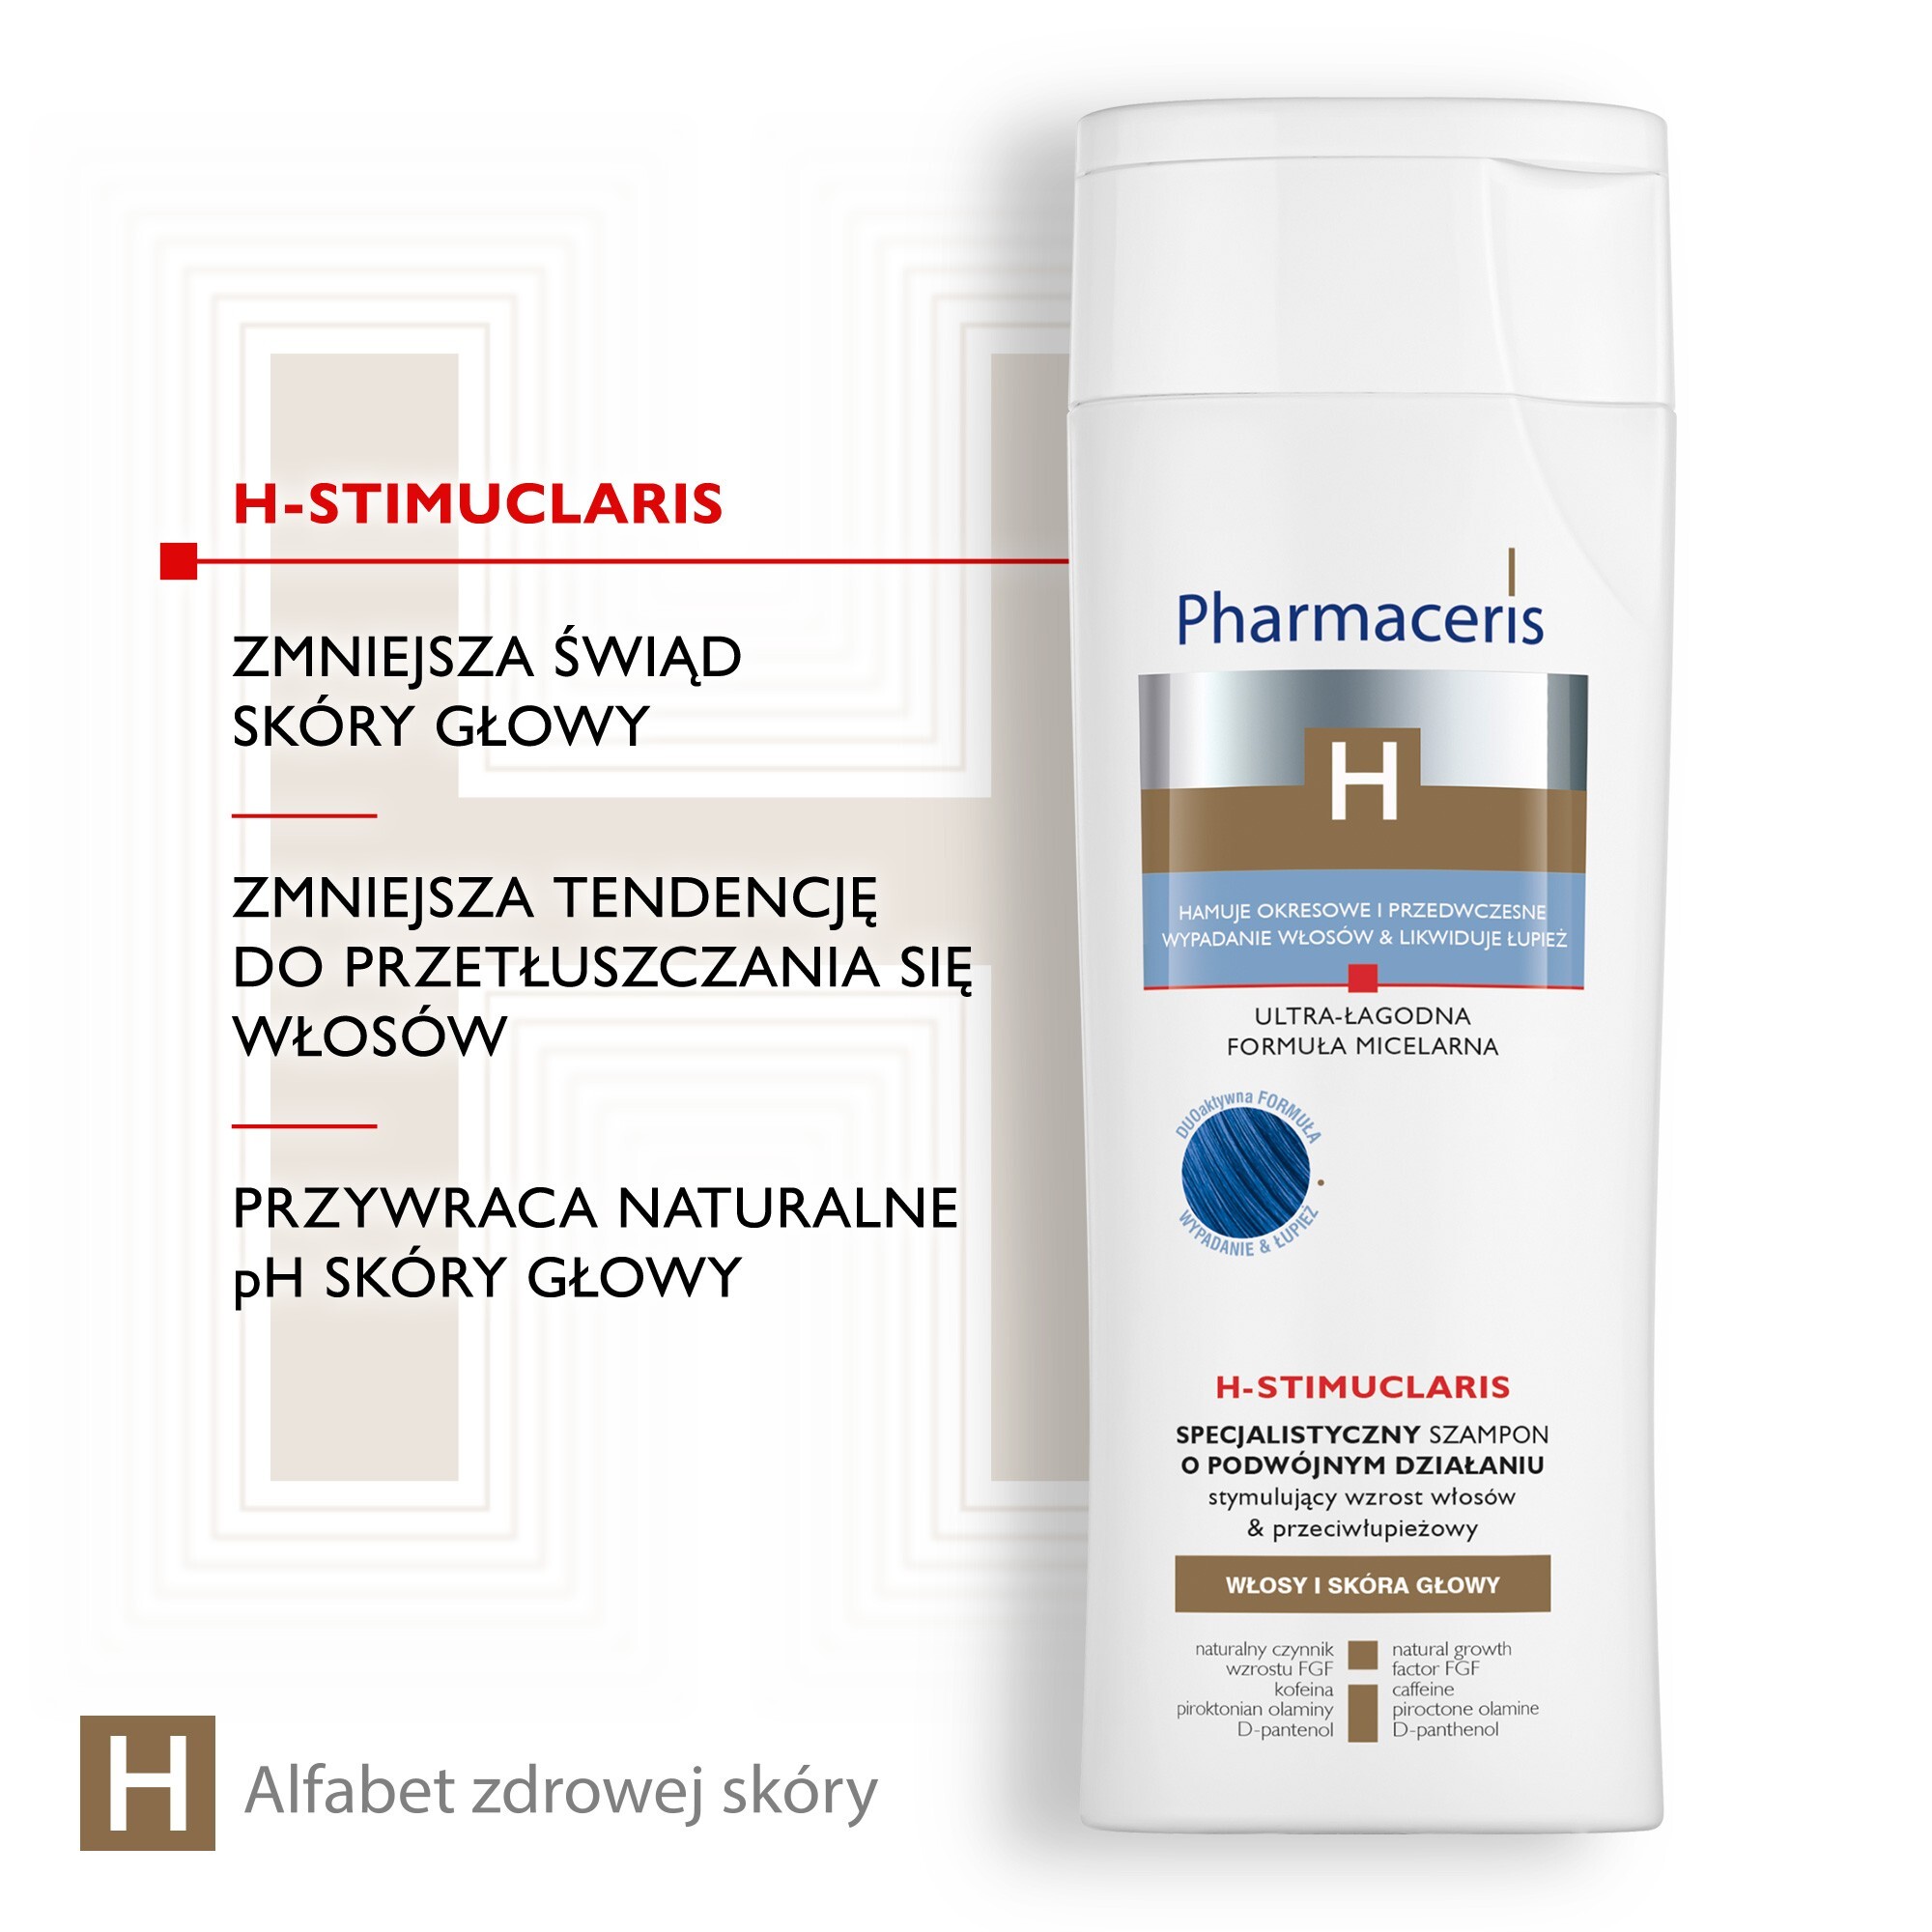 pharmaceris h stimuclaris specjalistyczny szampon stymulujący wzrost włosów